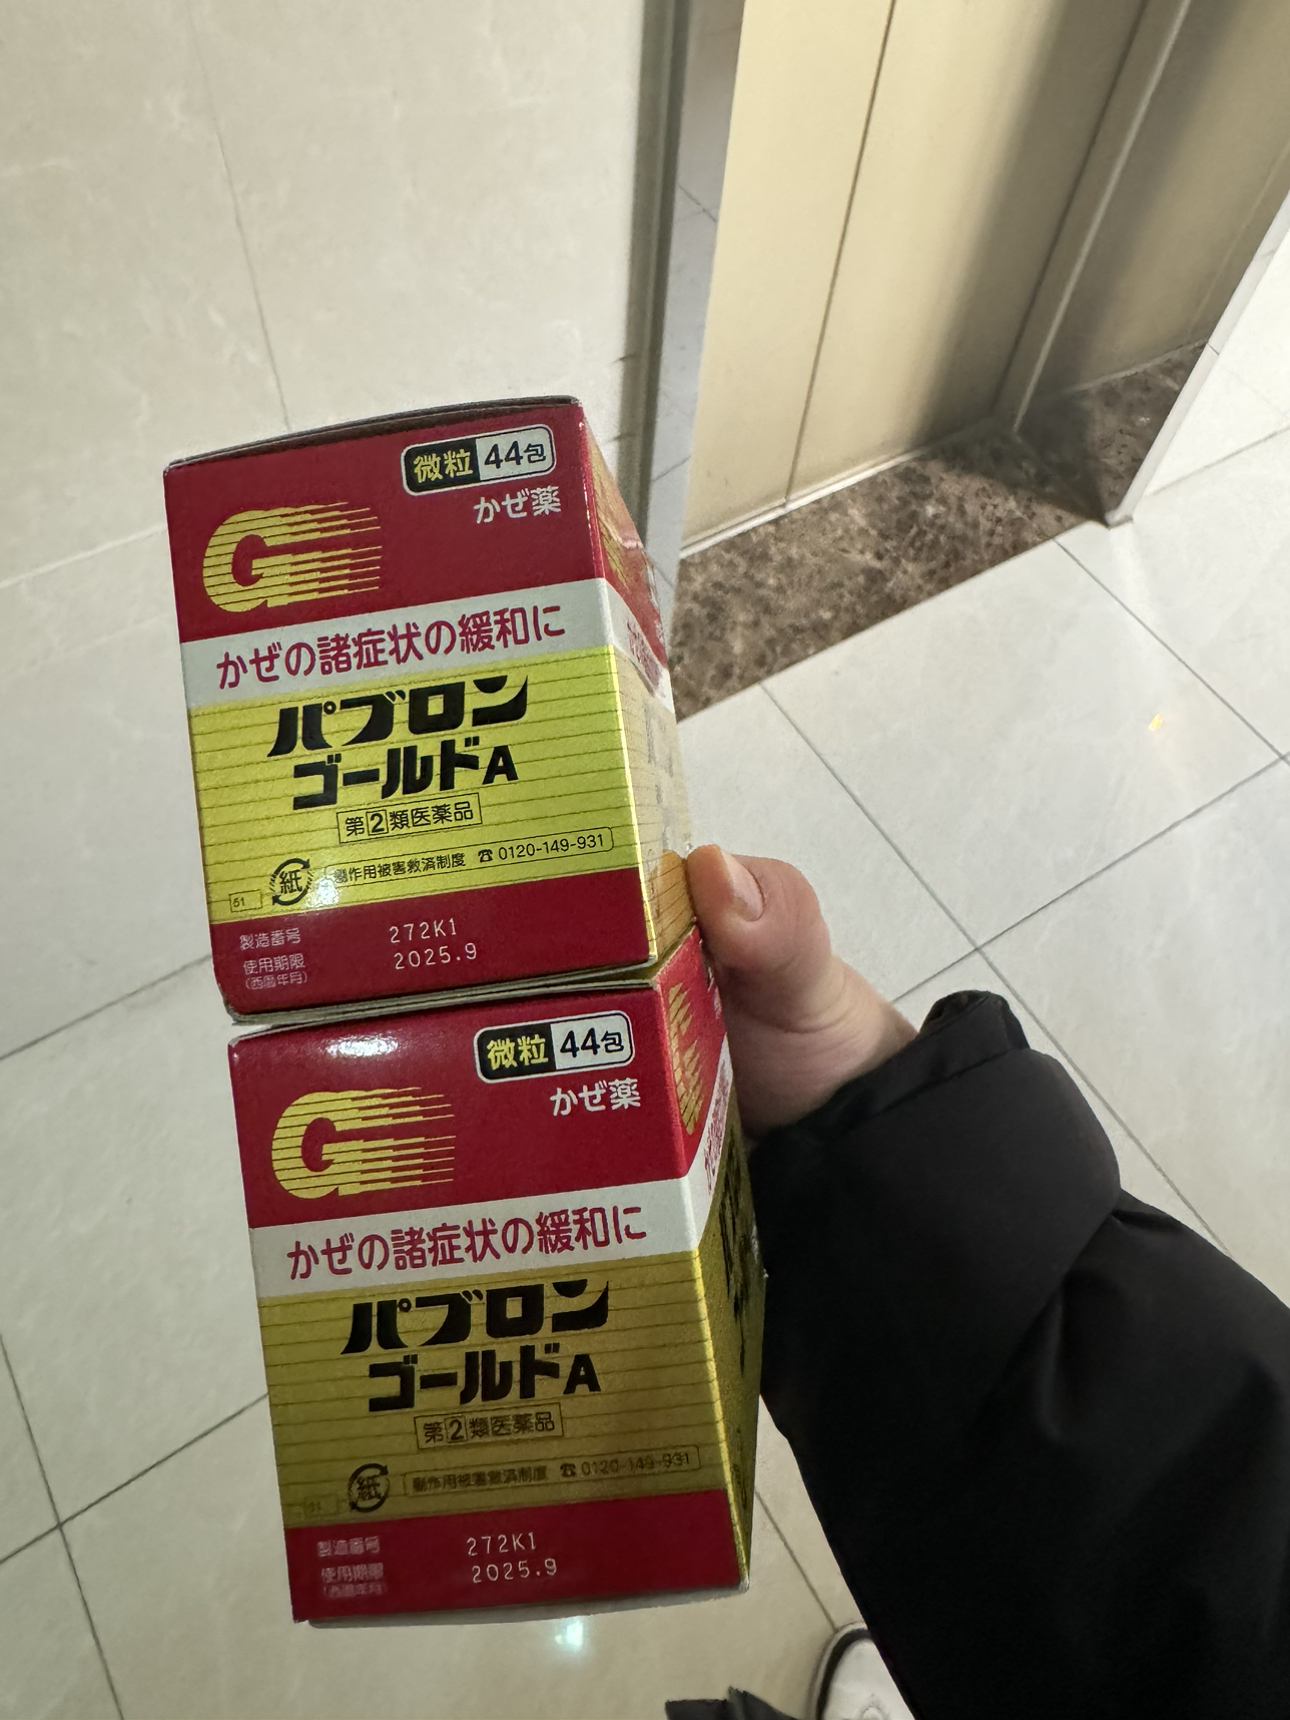 日本进口感冒灵颗粒感冒药咳嗽药 大正成人感冒冲剂44包/盒(12岁以上使用)晒单图